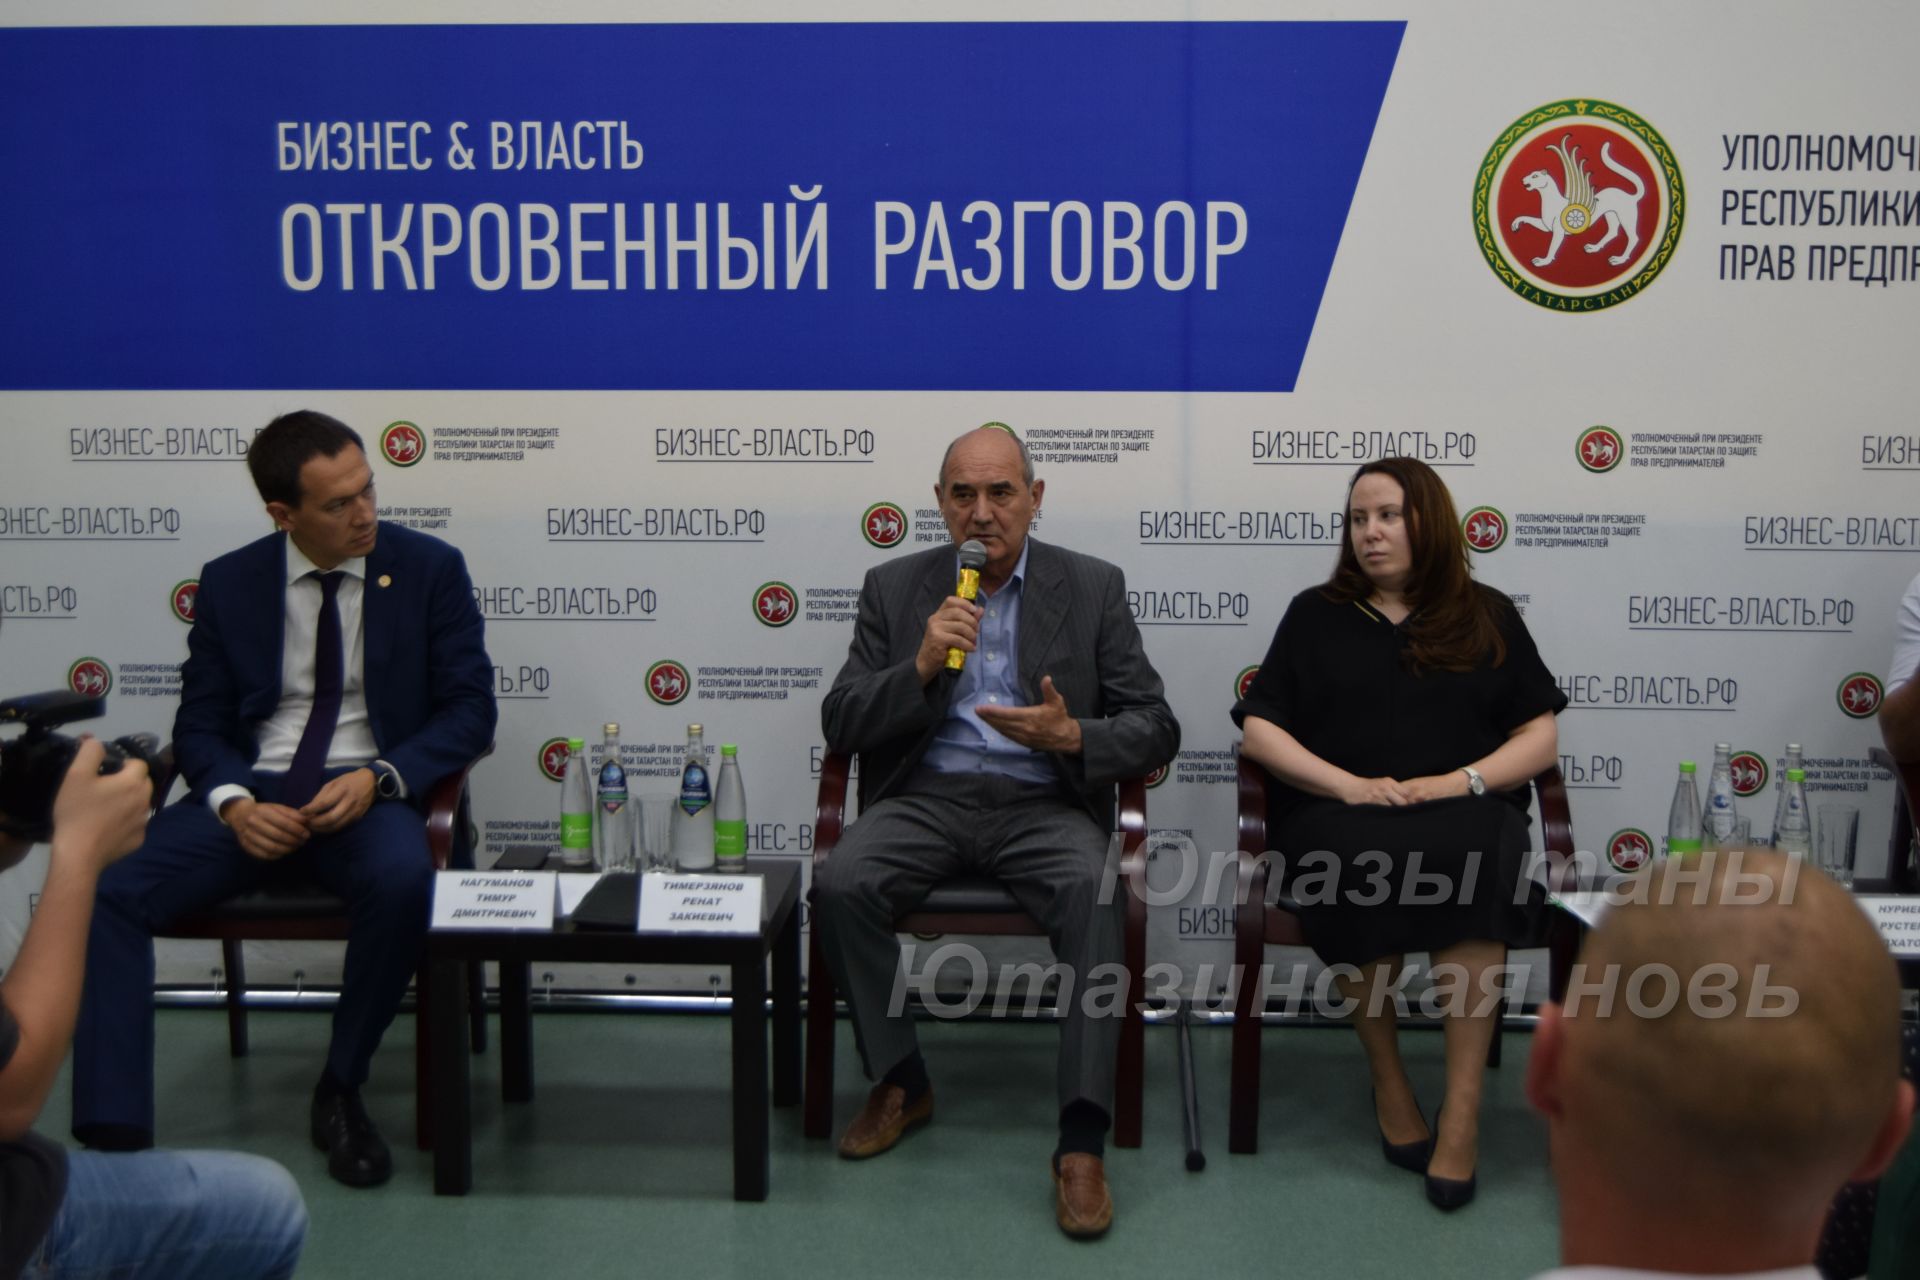 Ренат Тимерзянов провел встречу с предпринимателями Ютазинского района Республики Татарстан&nbsp;